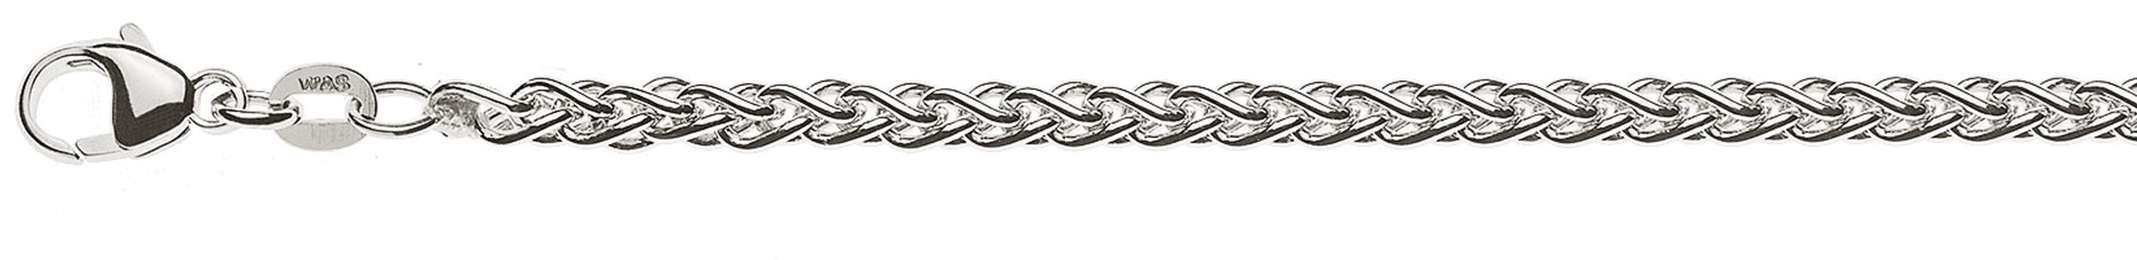 AURONOS Prestige Necklace white gold 18K cable chain 42cm 3.3mm